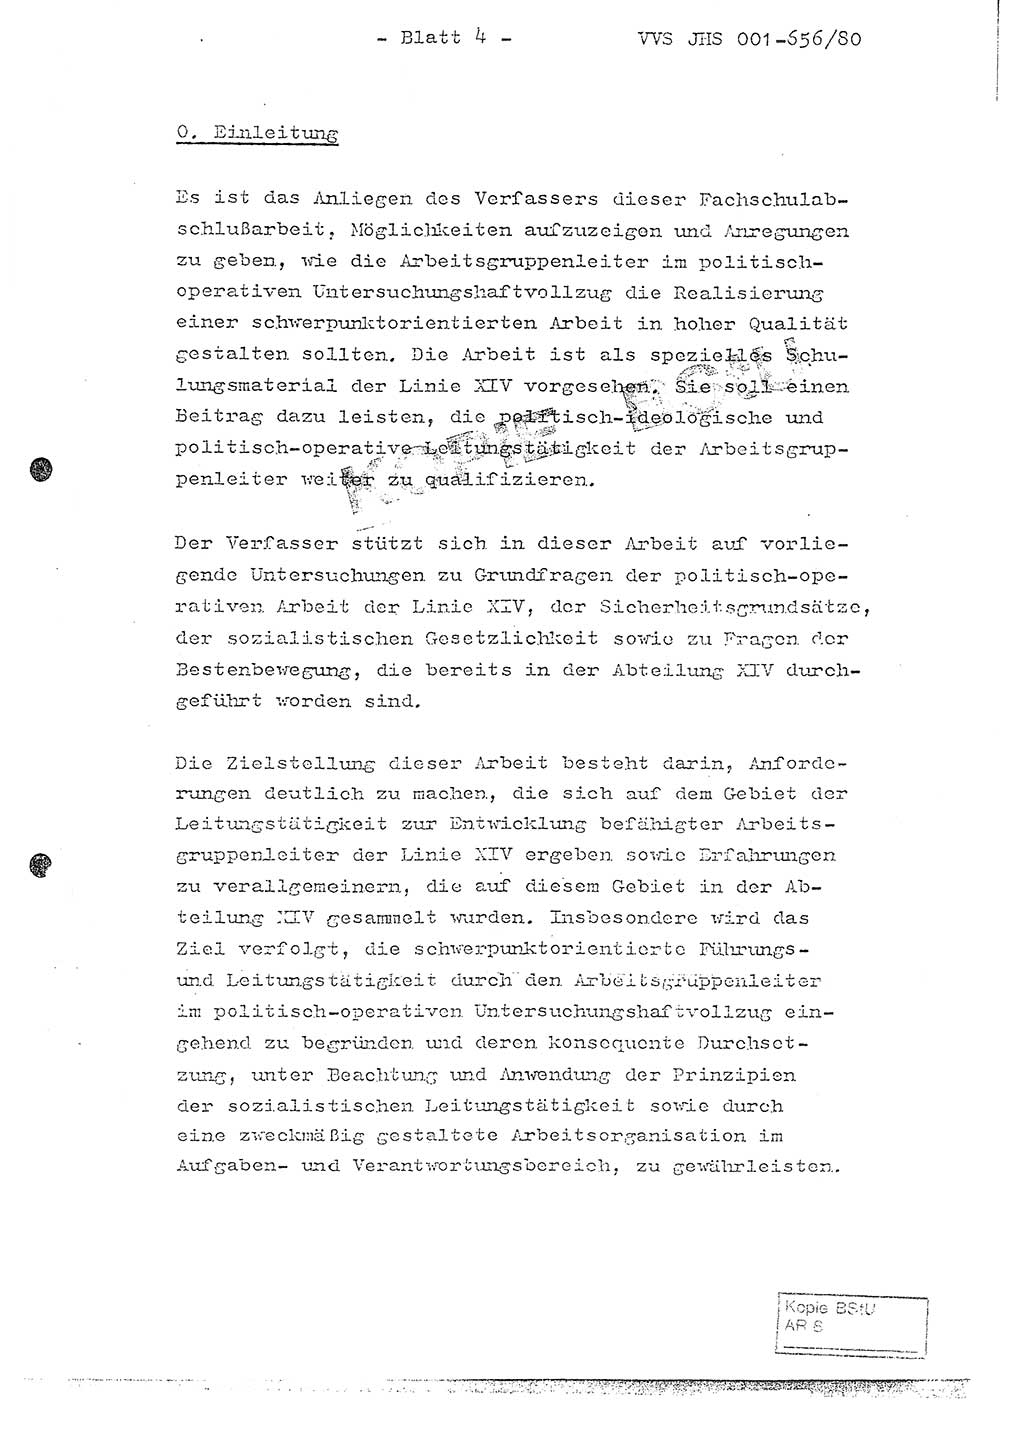 Fachschulabschlußarbeit Unterleutnant Christian Kätzel (Abt. ⅩⅣ), Ministerium für Staatssicherheit (MfS) [Deutsche Demokratische Republik (DDR)], Juristische Hochschule (JHS), Vertrauliche Verschlußsache (VVS) 001-656/80, Potsdam 1980, Blatt 4 (FS-Abschl.-Arb. MfS DDR JHS VVS 001-656/80 1980, Bl. 4)